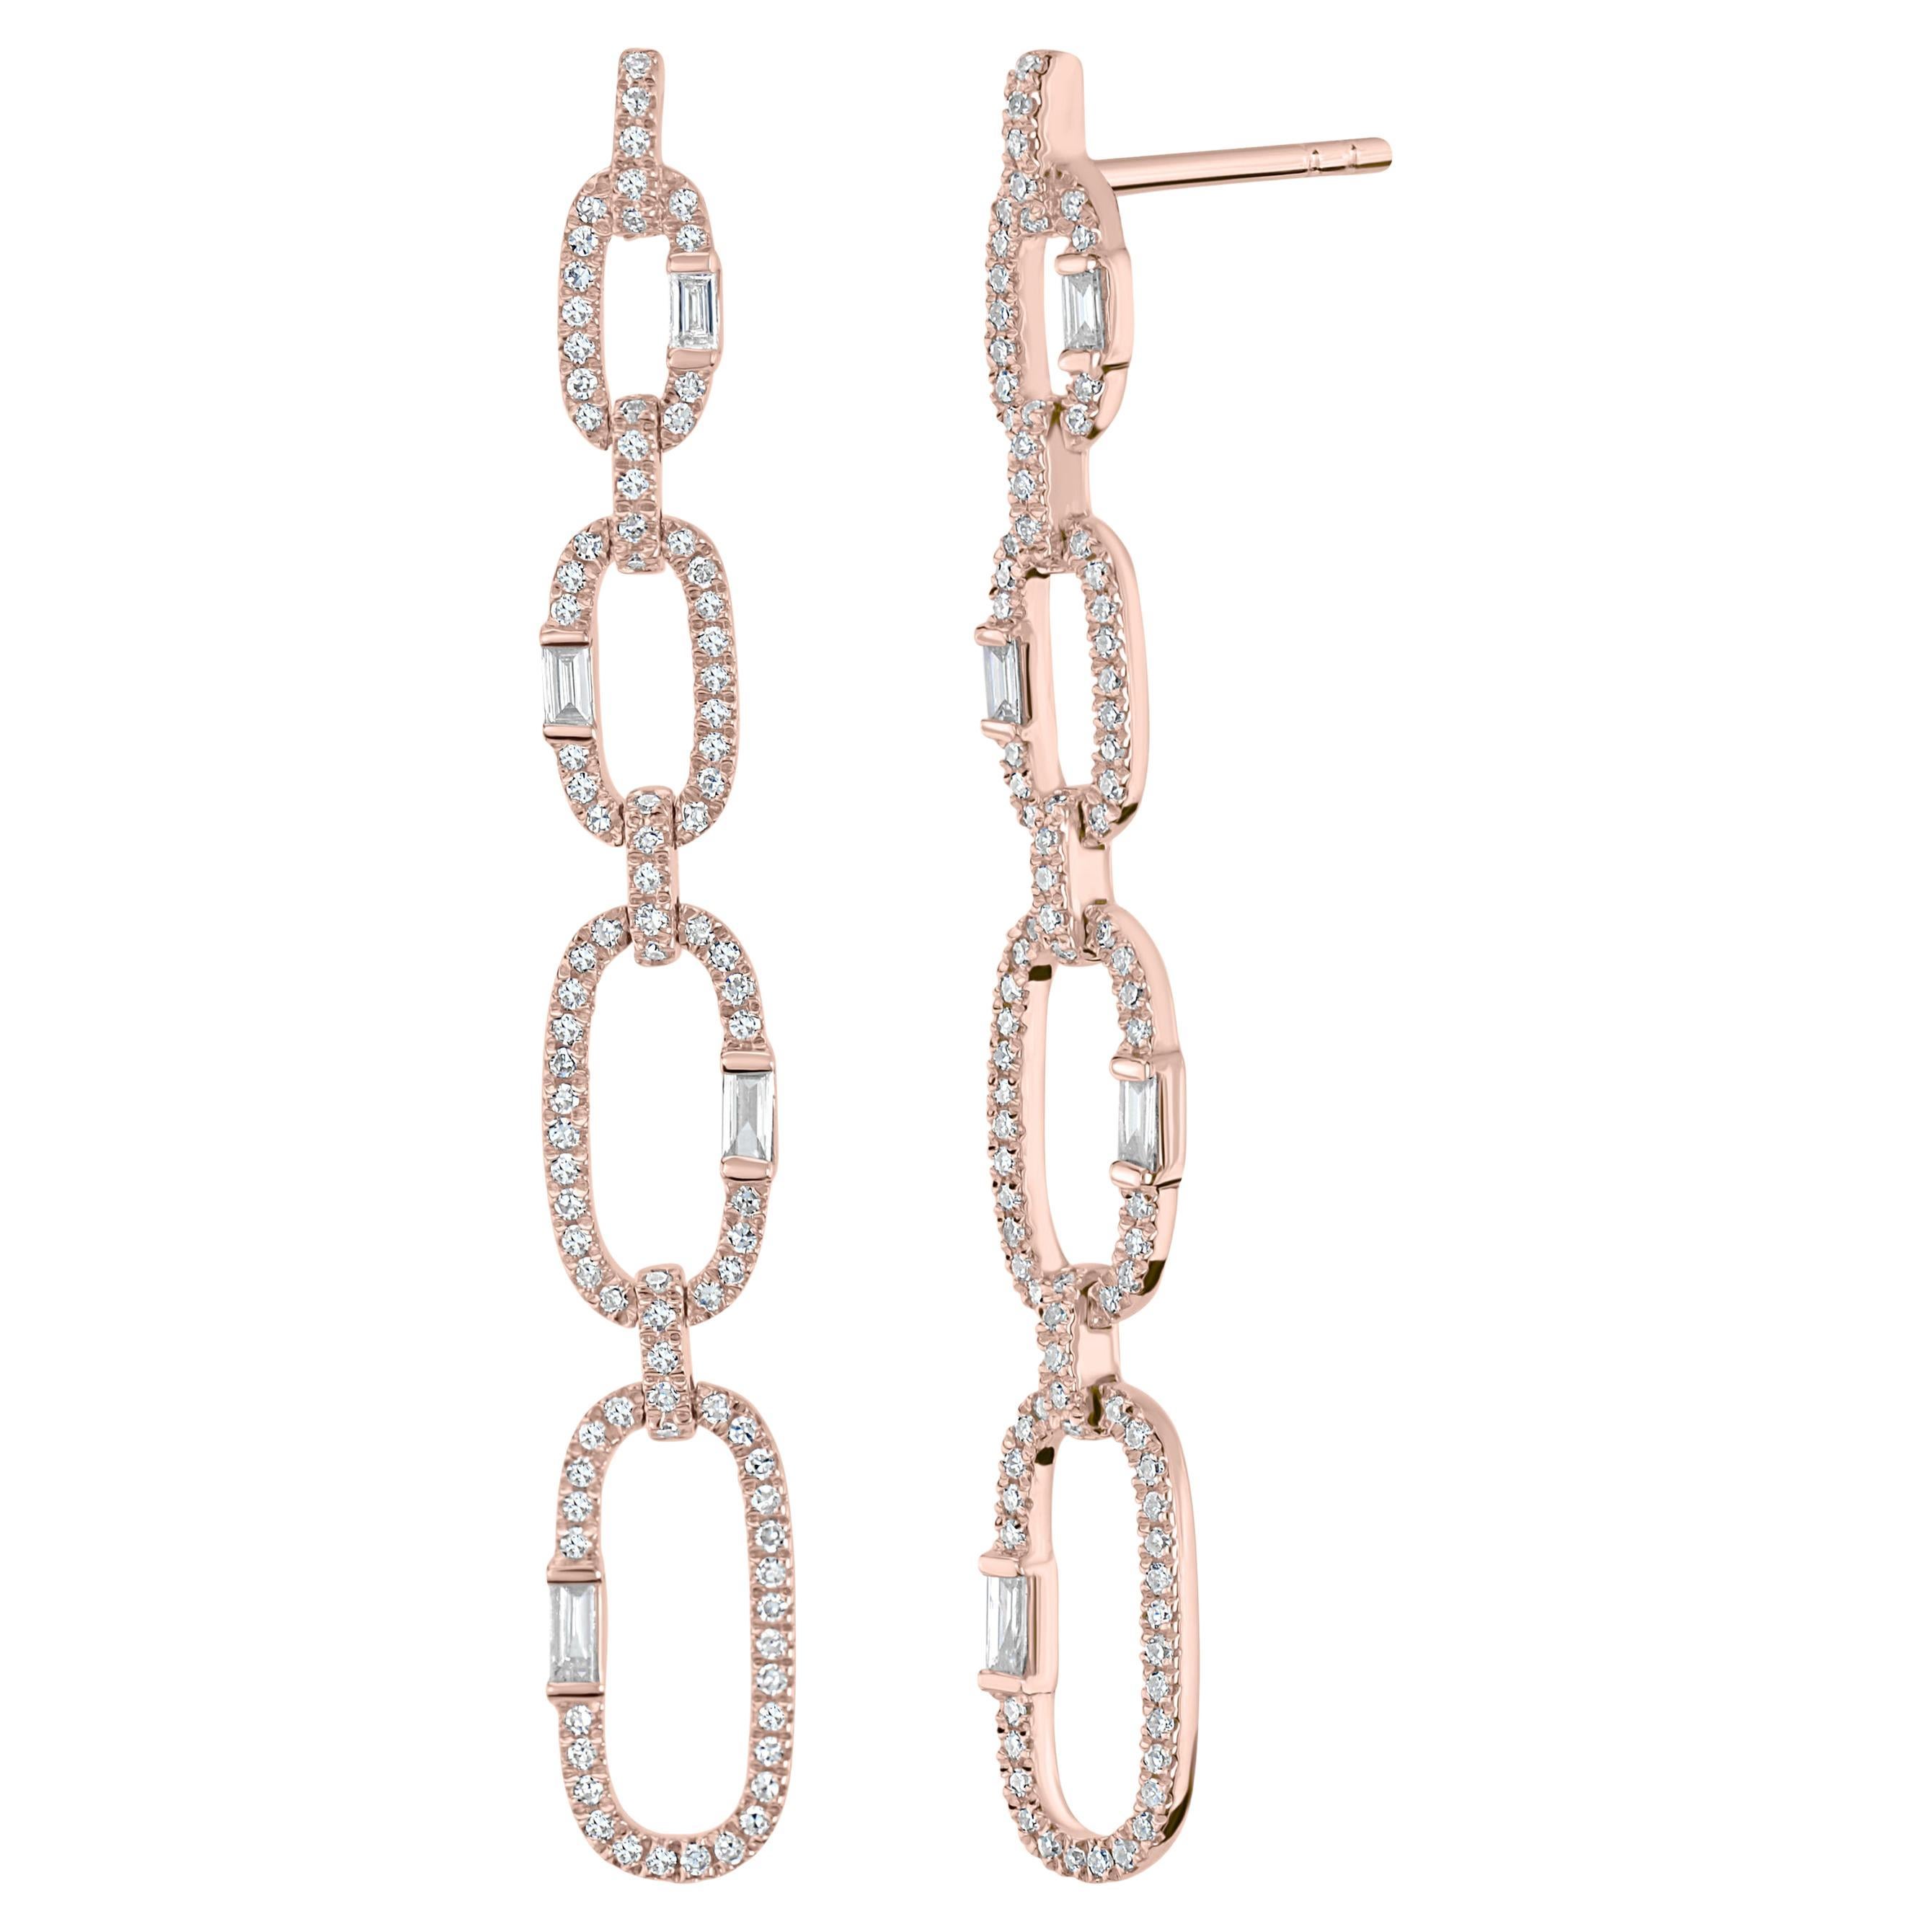 Luxle 0.69 Carat T.W Diamond Link Drop Earrings in 18 Karat Rose Gold